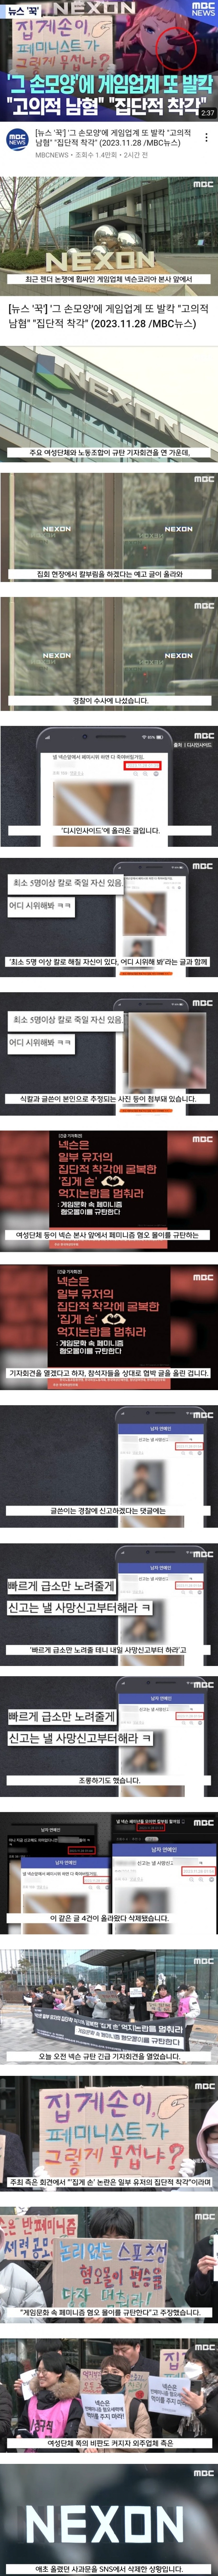 남혐 게임 사건에 대한 MBC의 보도 - 9